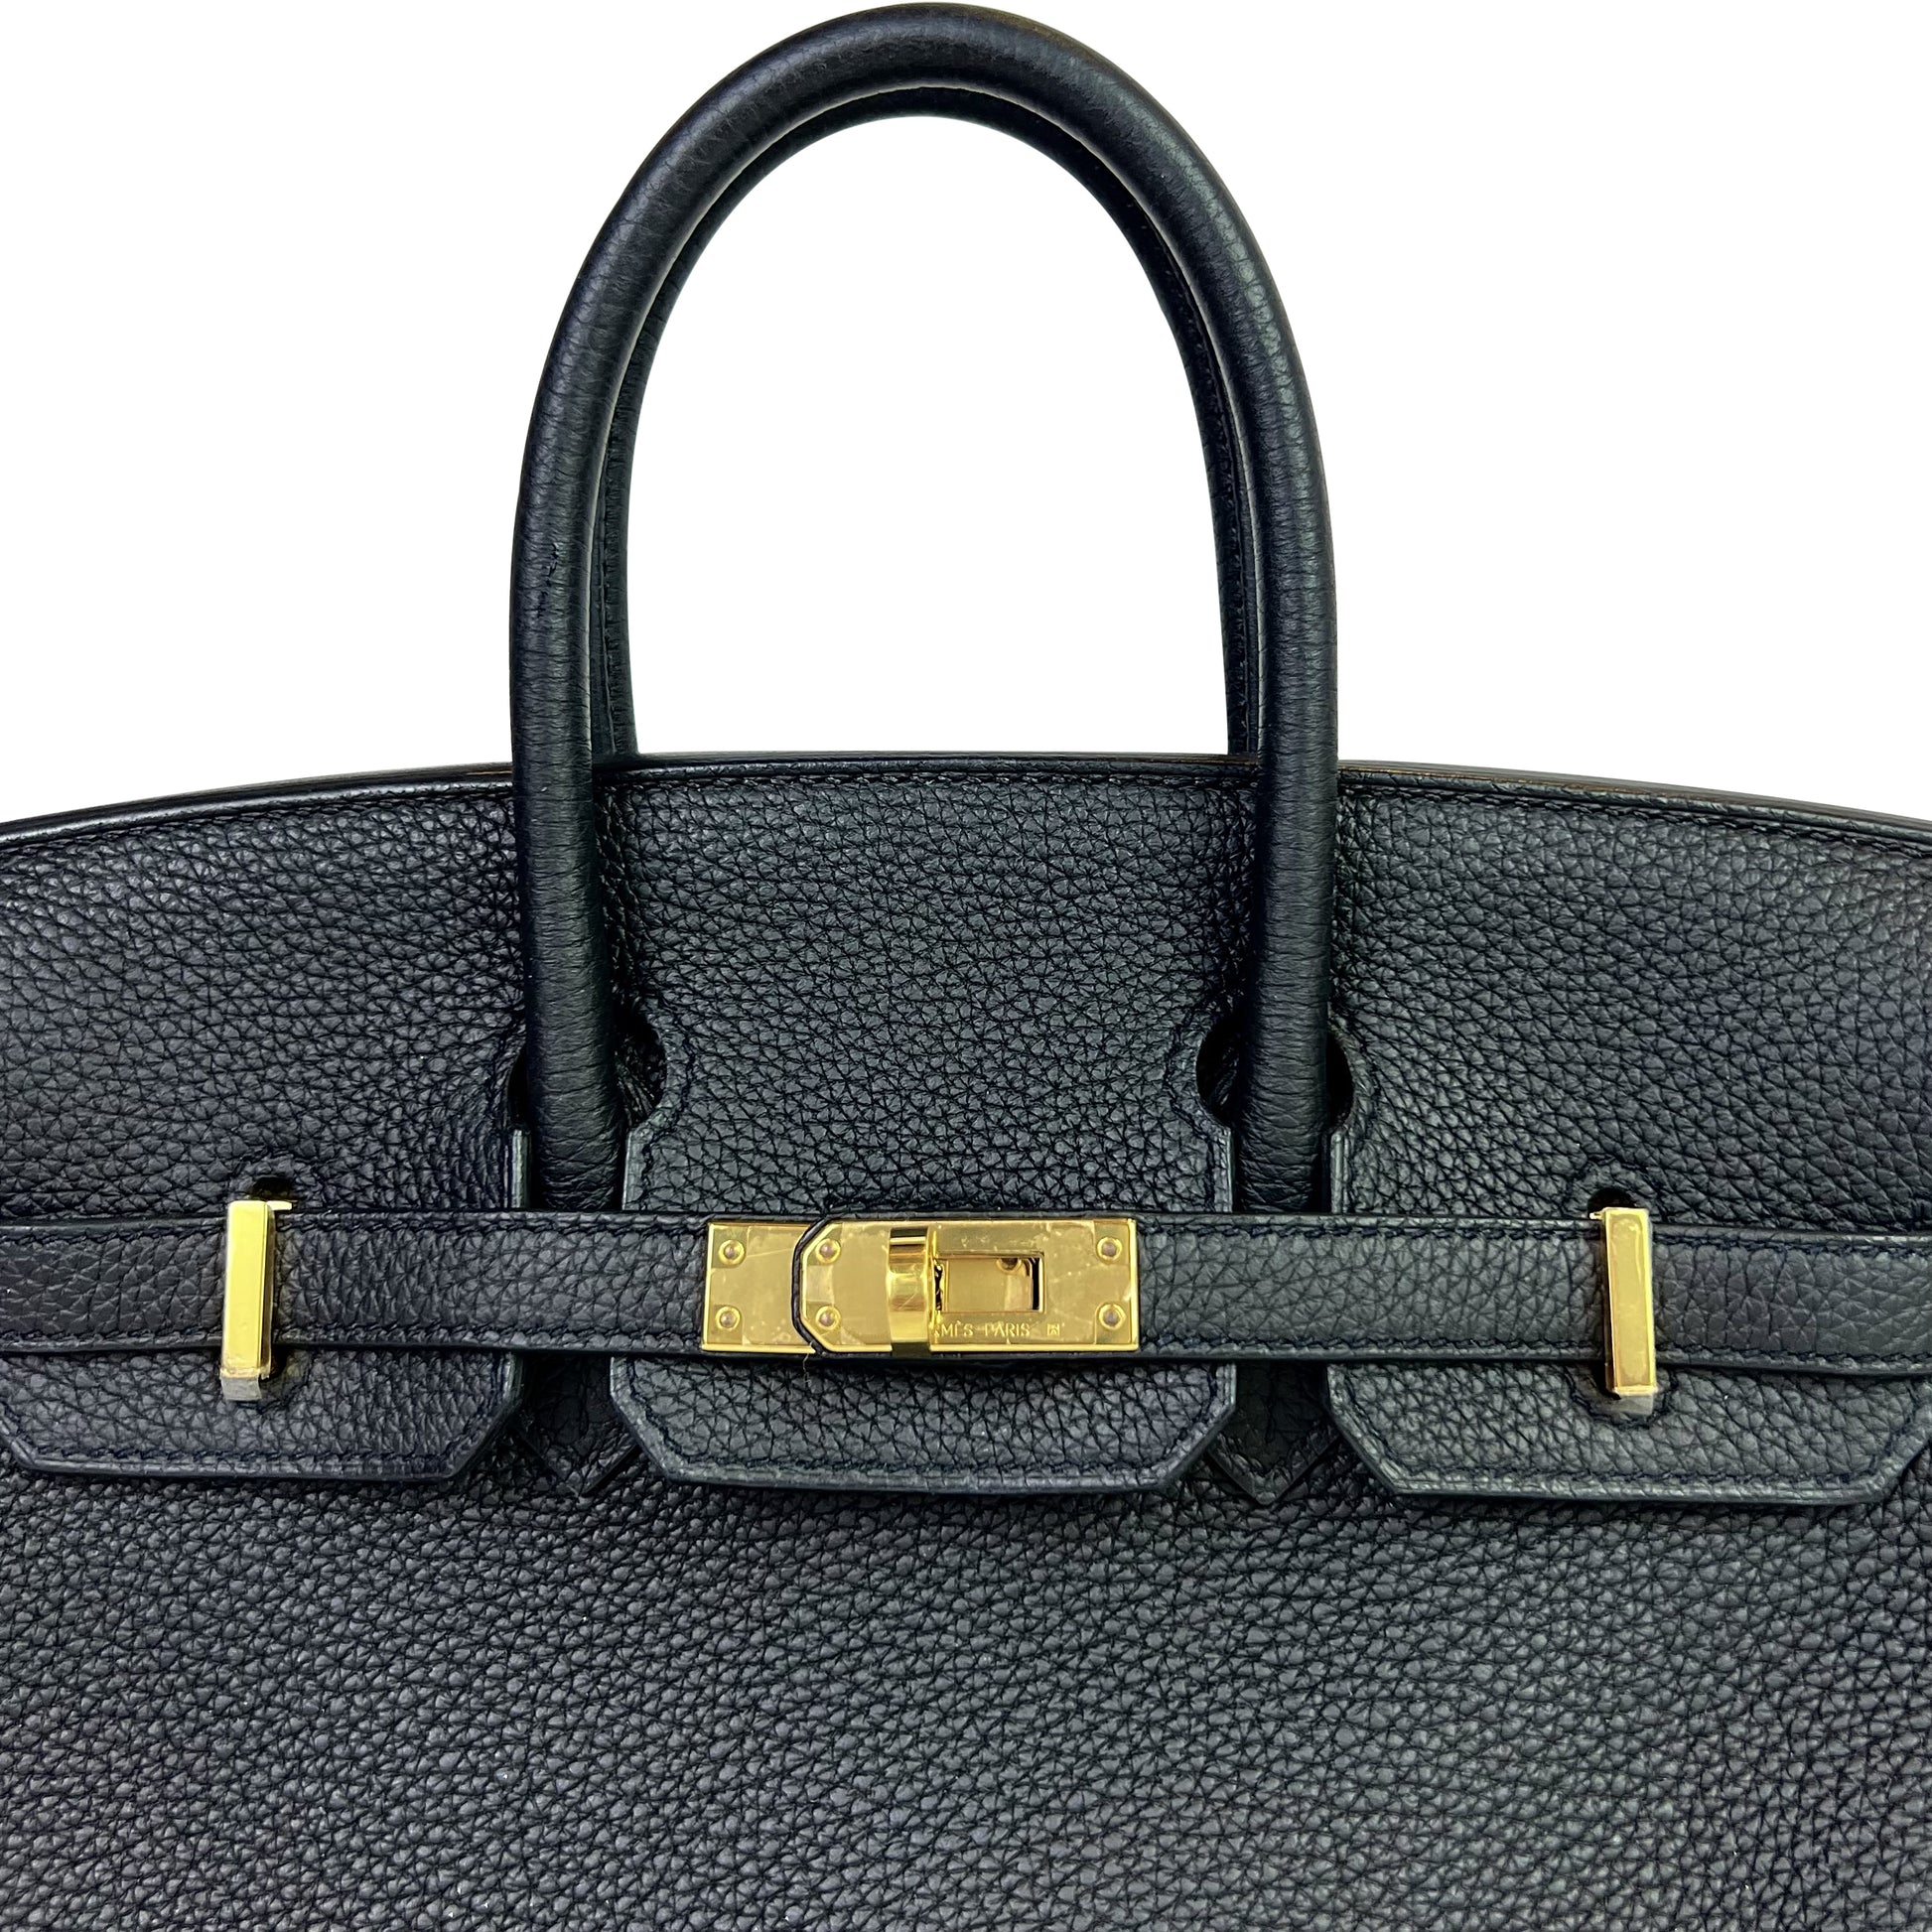 Hermes Birkin bag 25 Black Togo leather Gold hardware